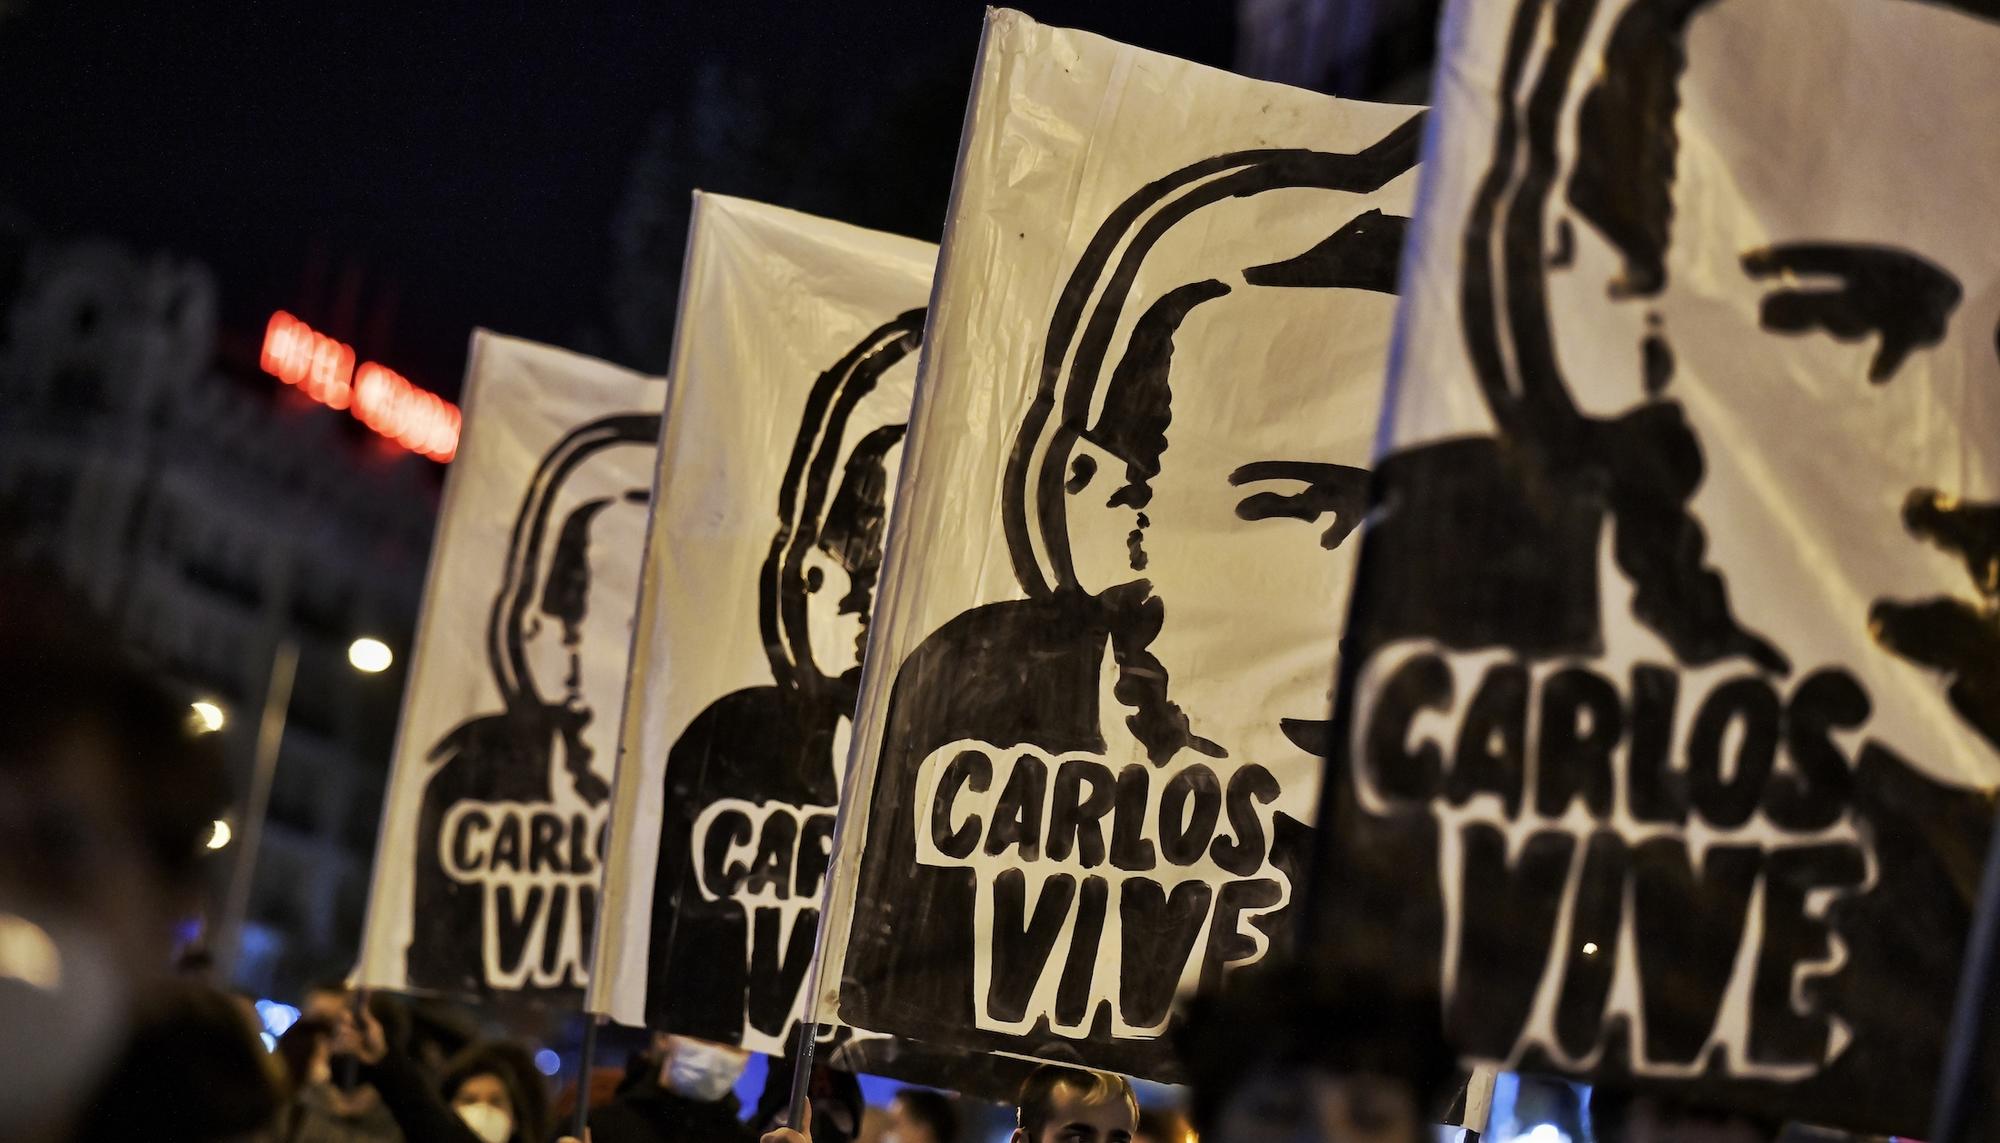 Manifestación antifascista Carlos Palomino 2020 - 1